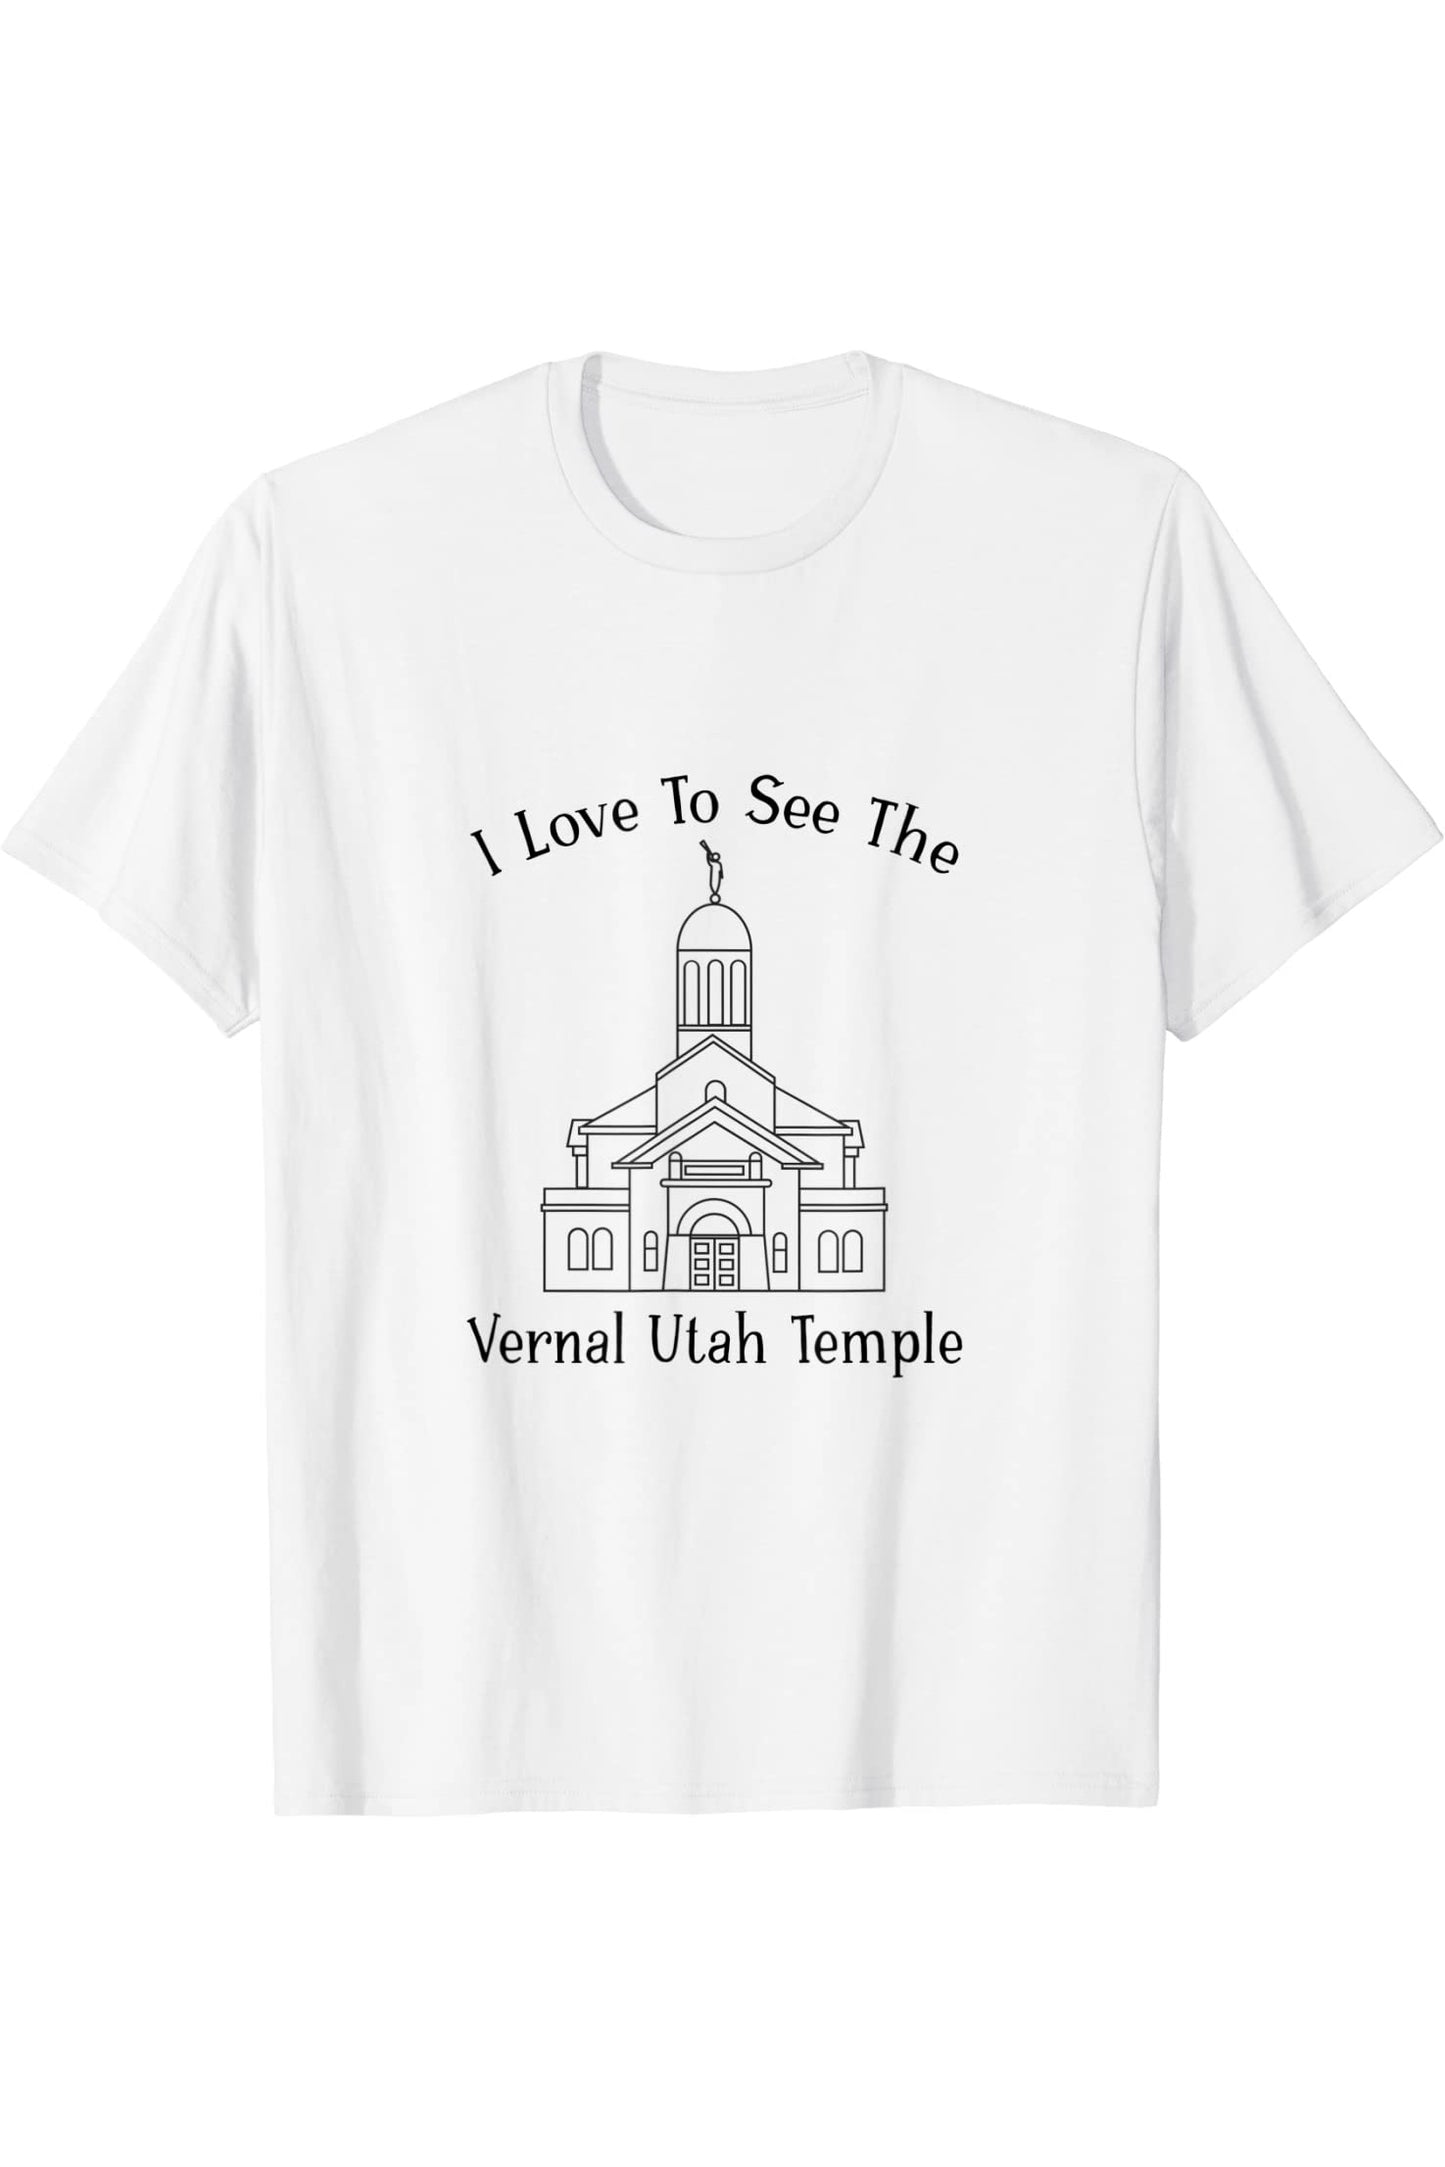 Templo Vernal Utah, me encanta ver mi templo, feliz T-Shirt